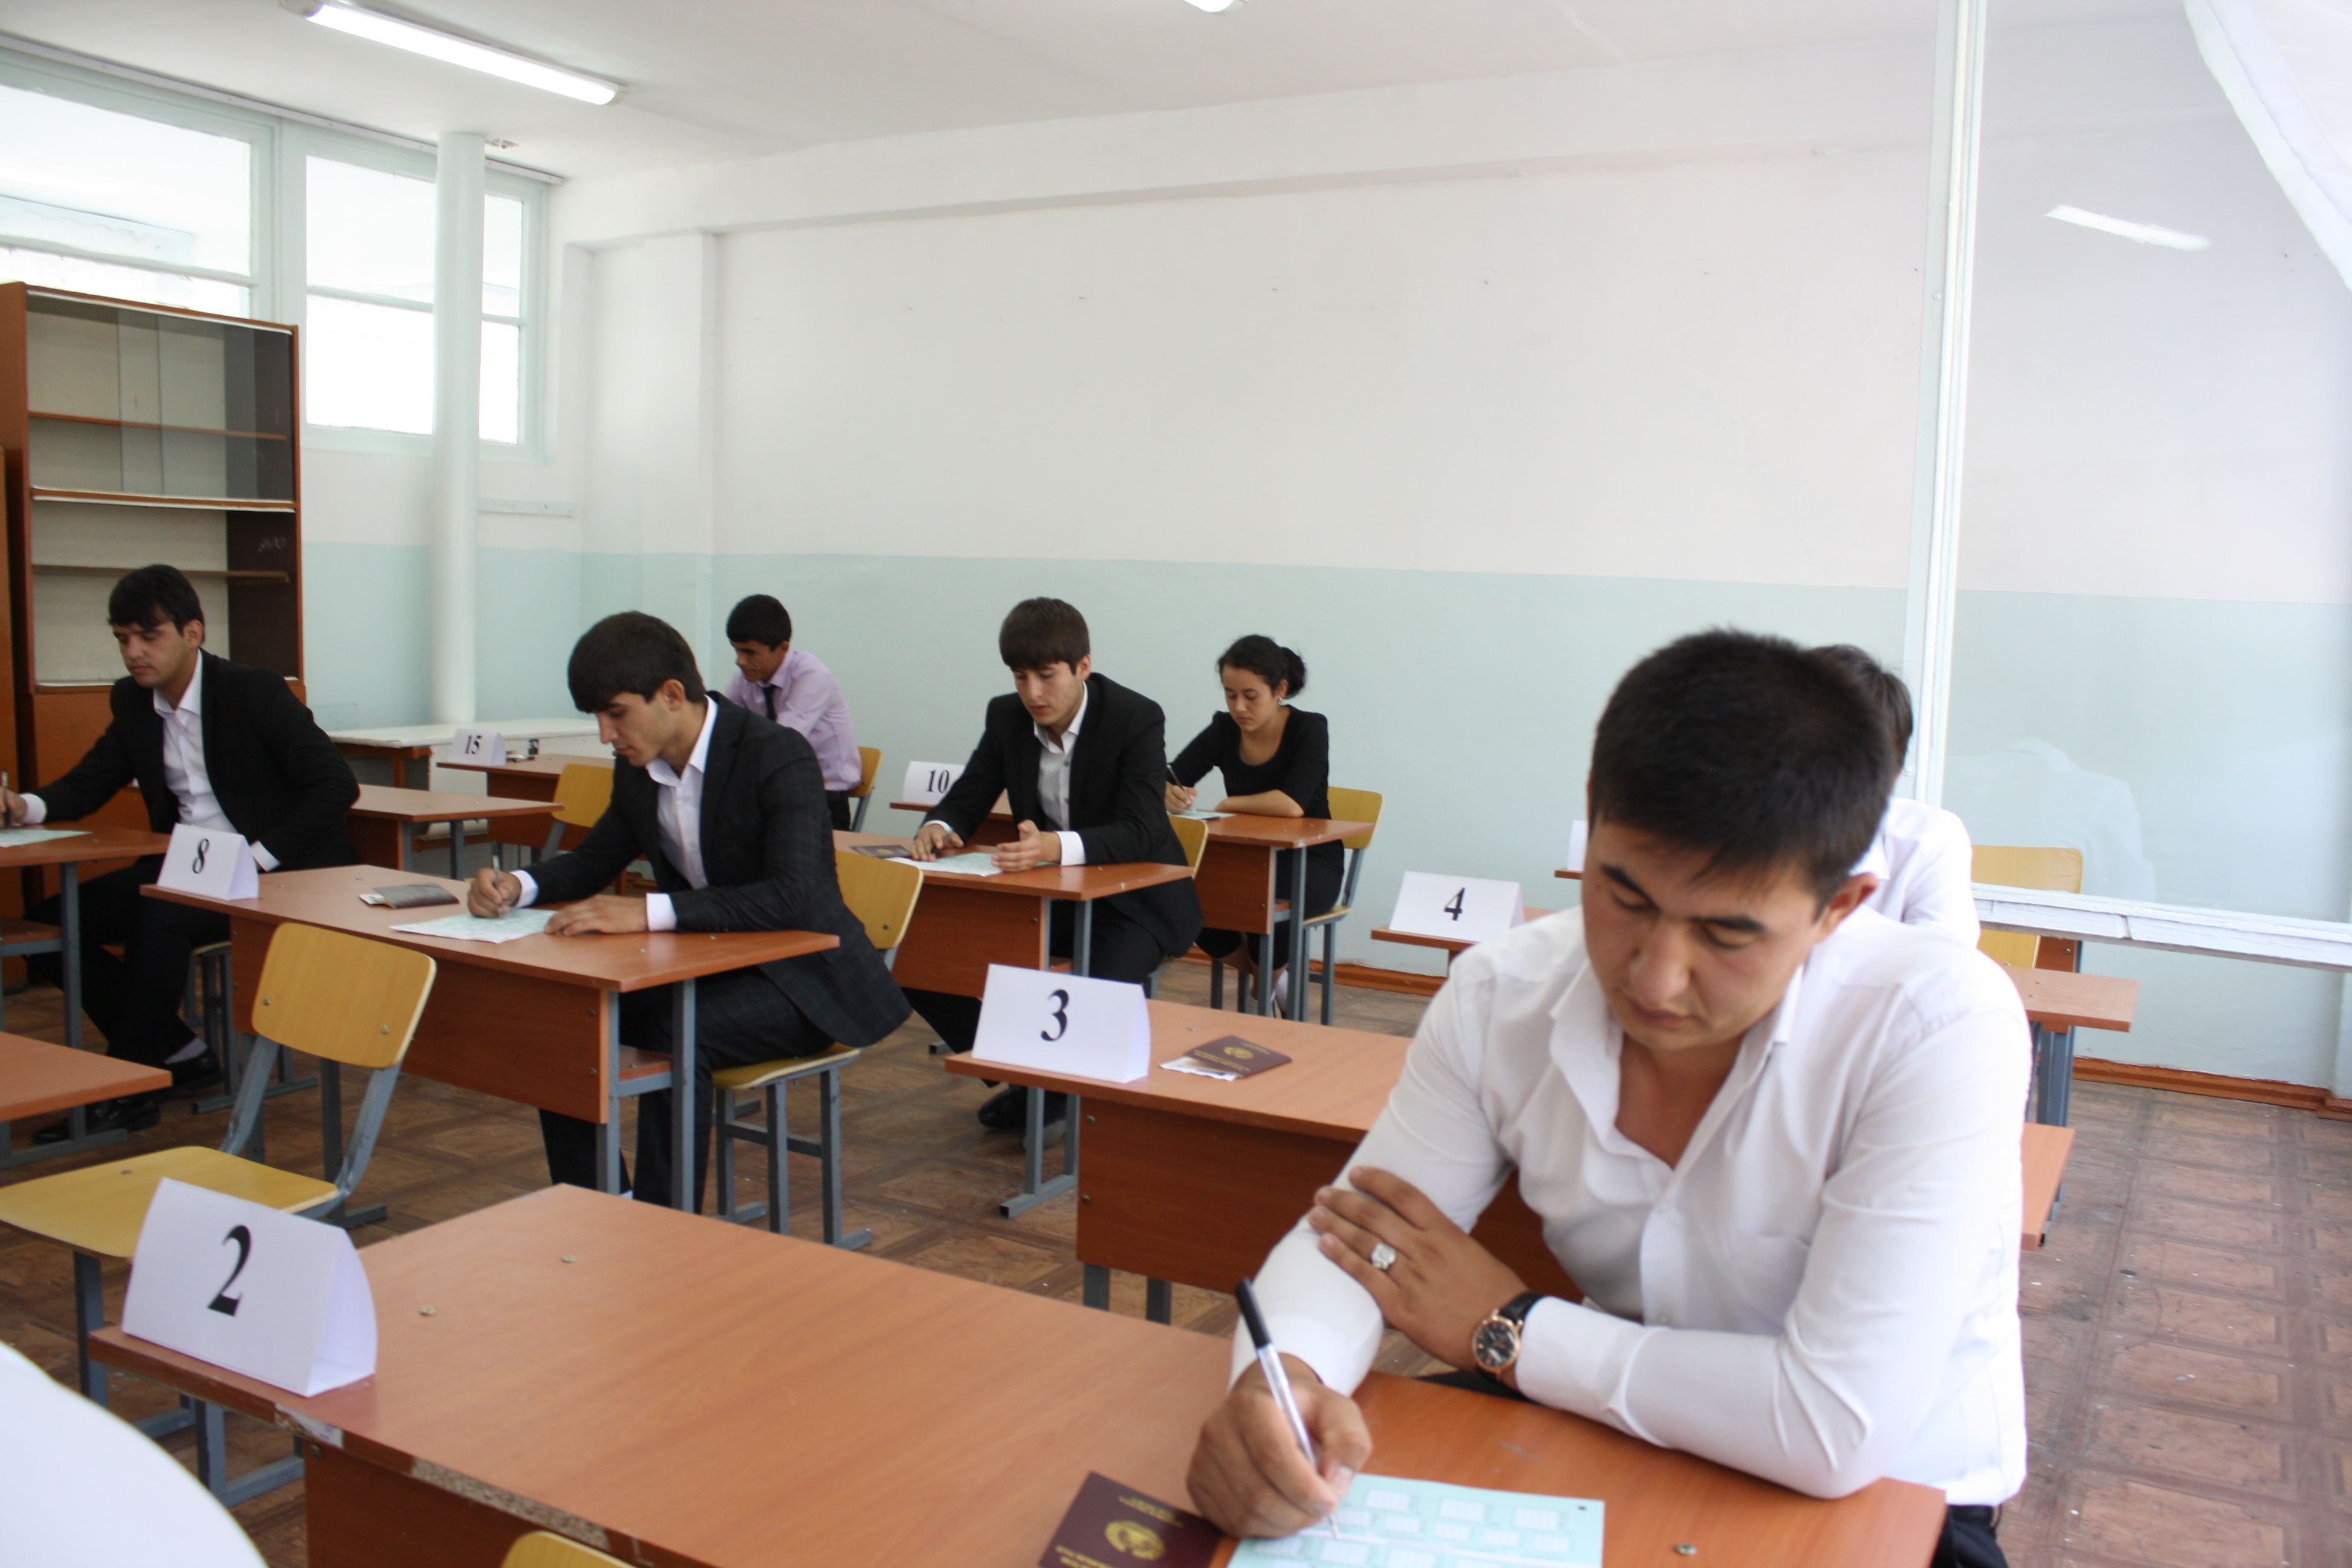 В Таджикистане сократилось количество студентов. Виноват закон о военной службе? 